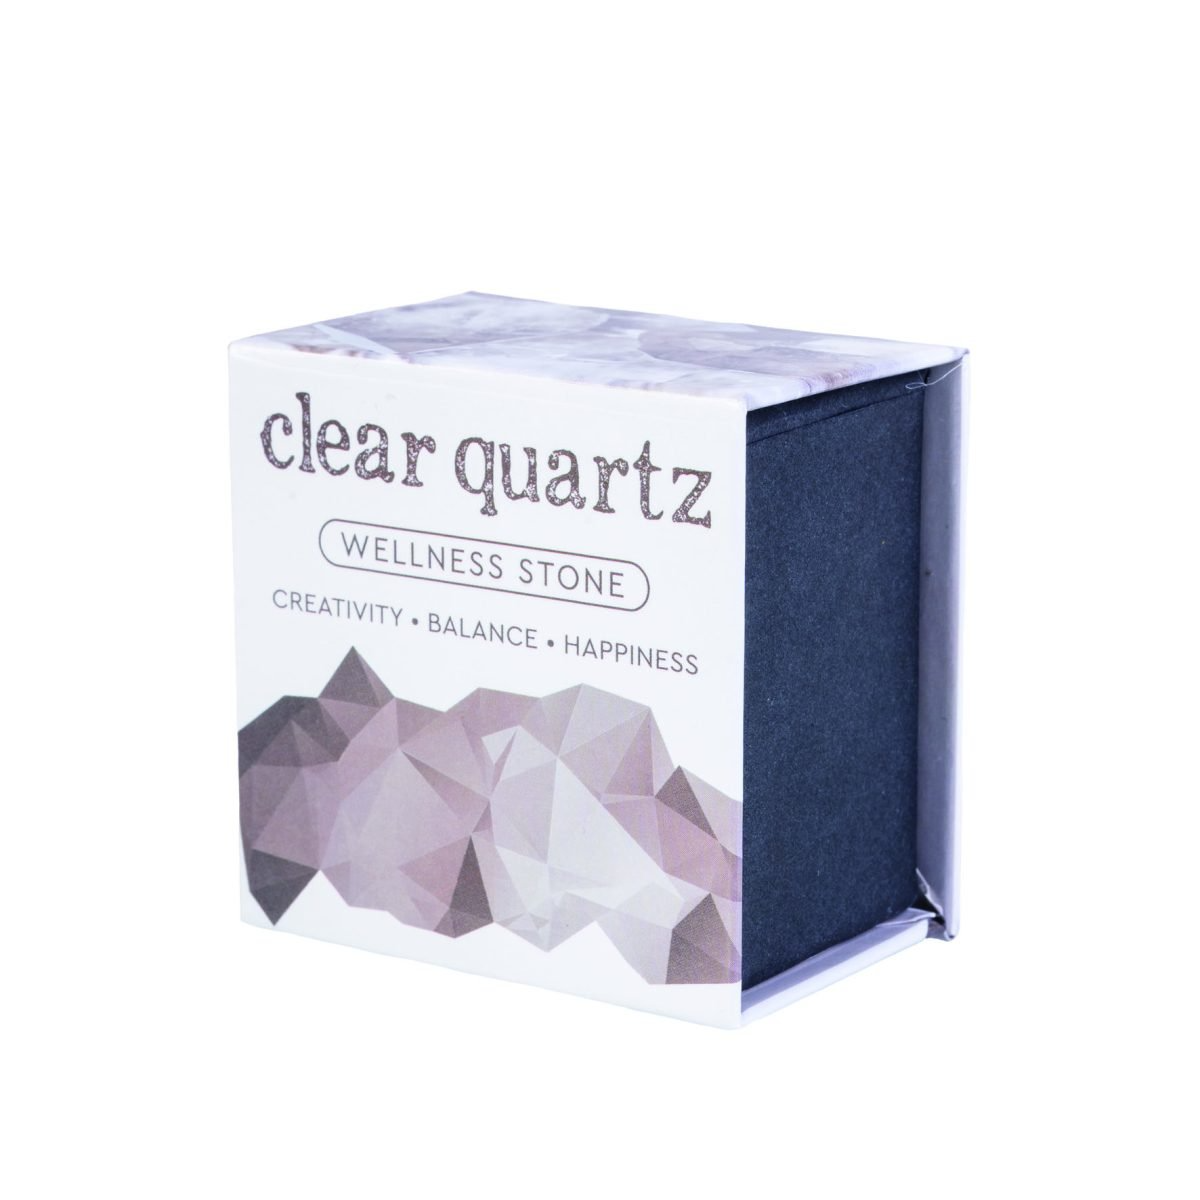 Raw Wellness Stone - Clear Quartz